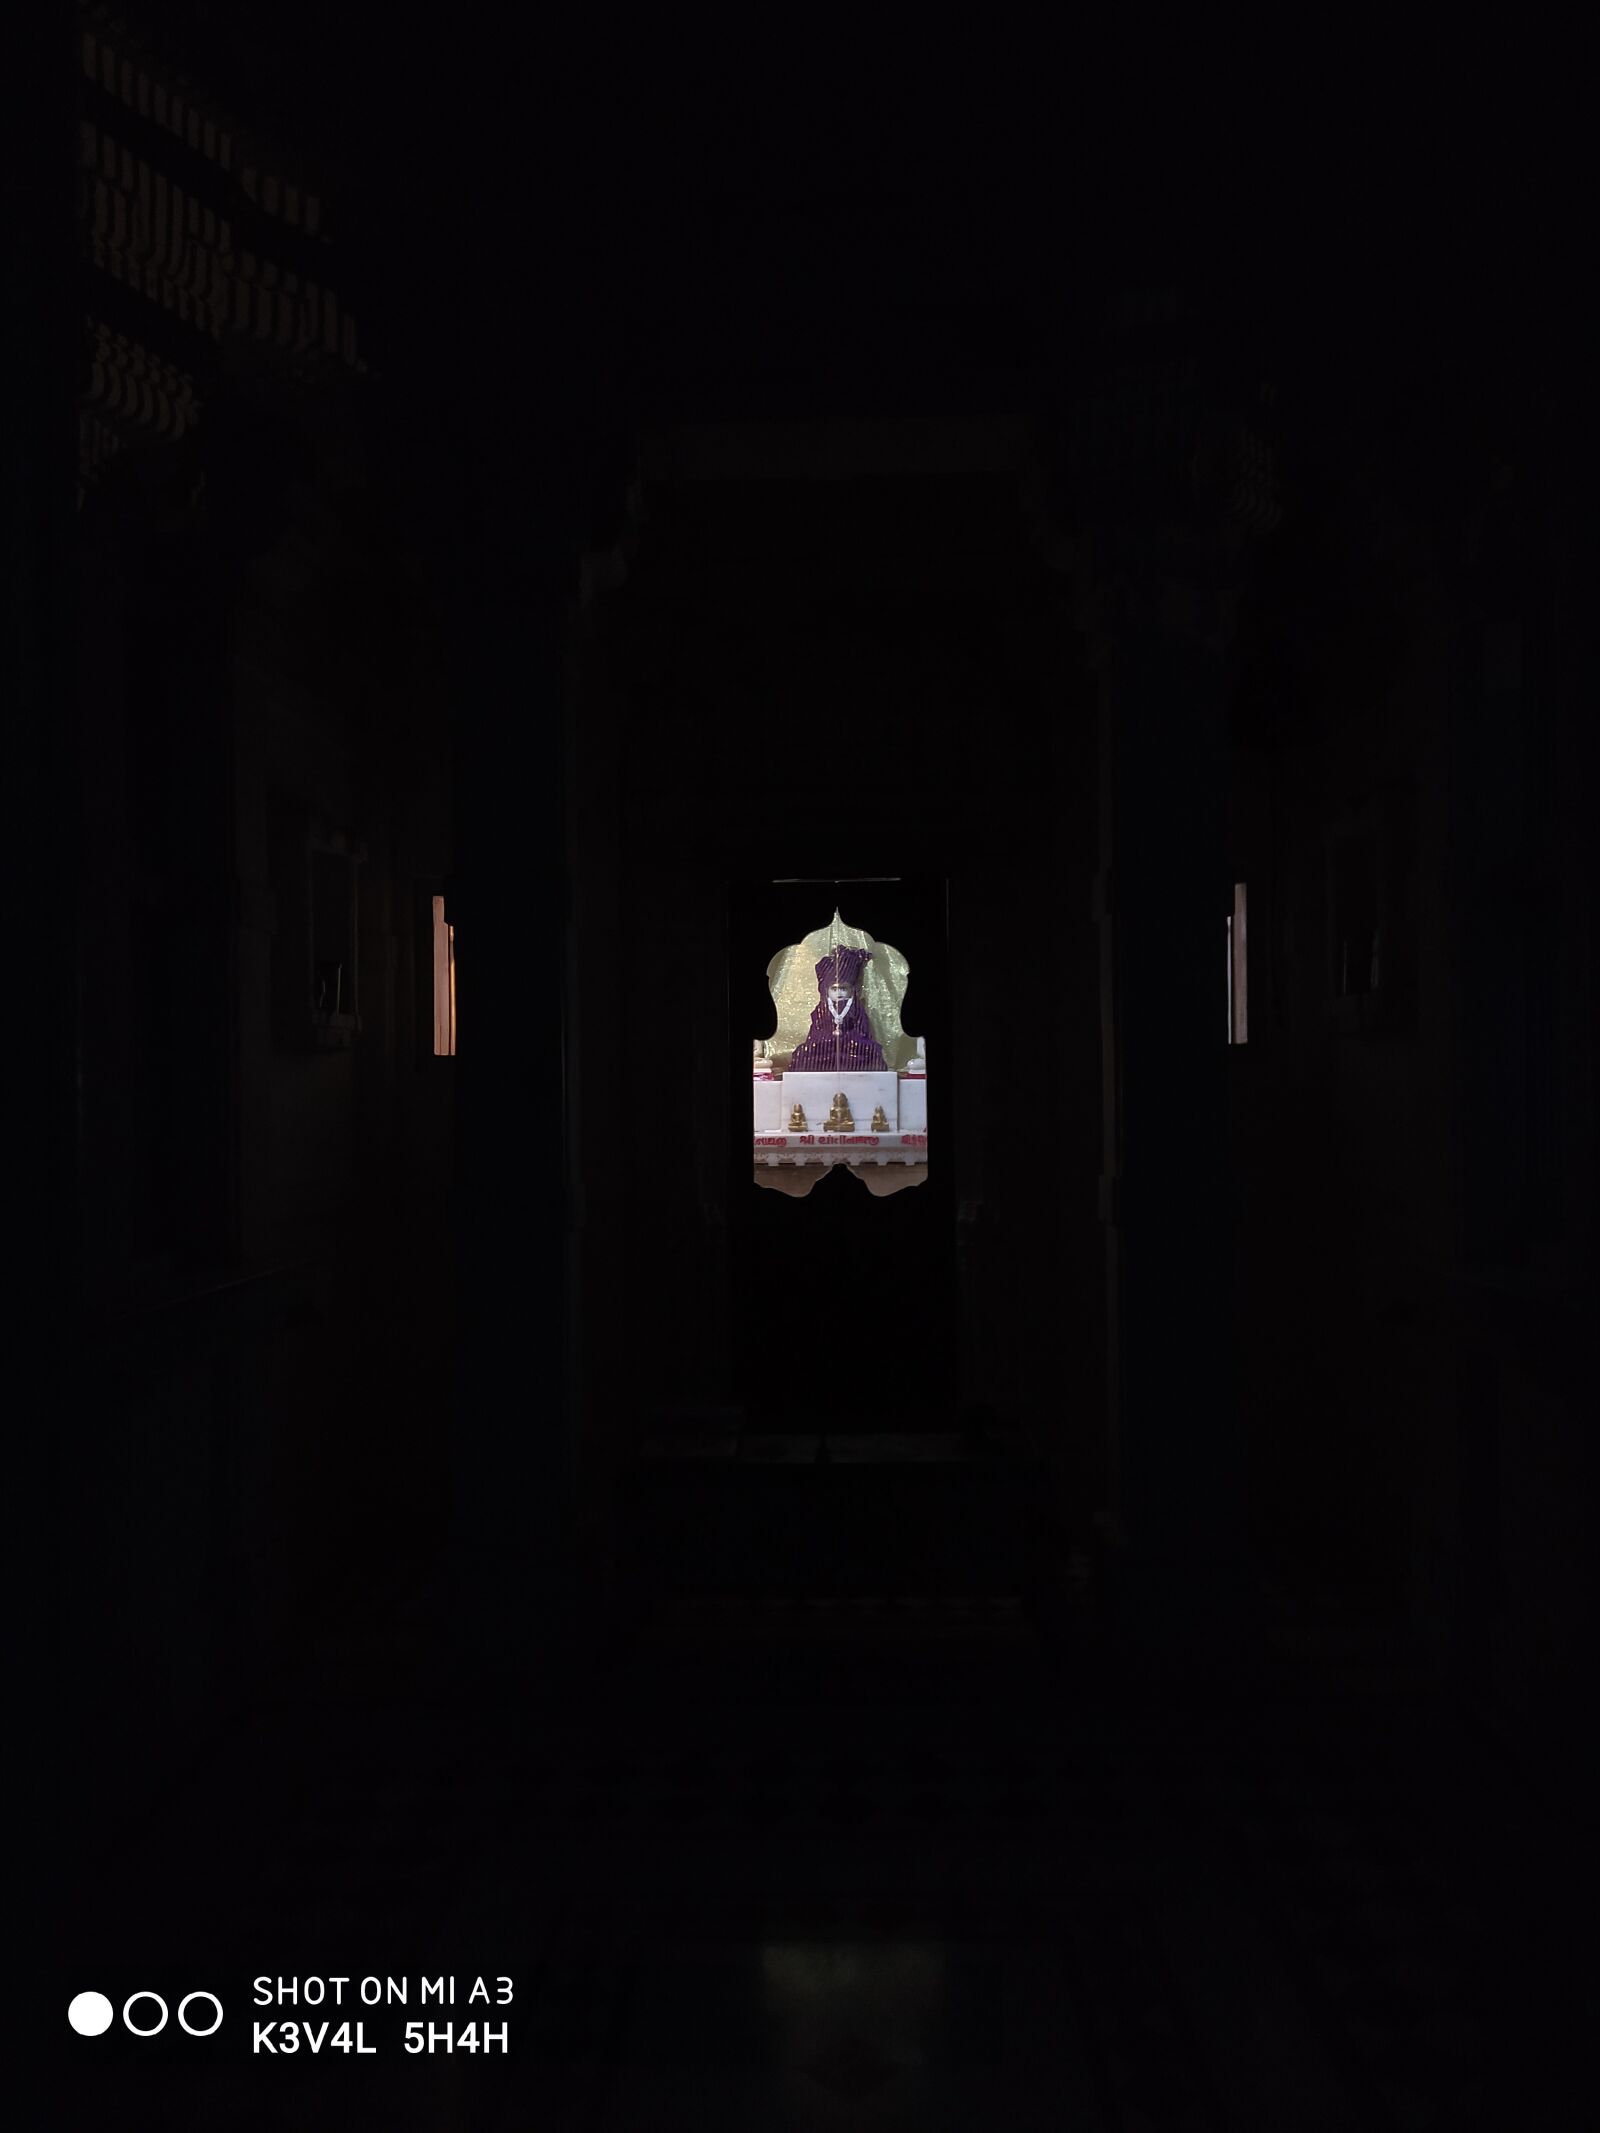 Xiaomi Mi A3 sample photo. Jain temple, old shantinathji photography